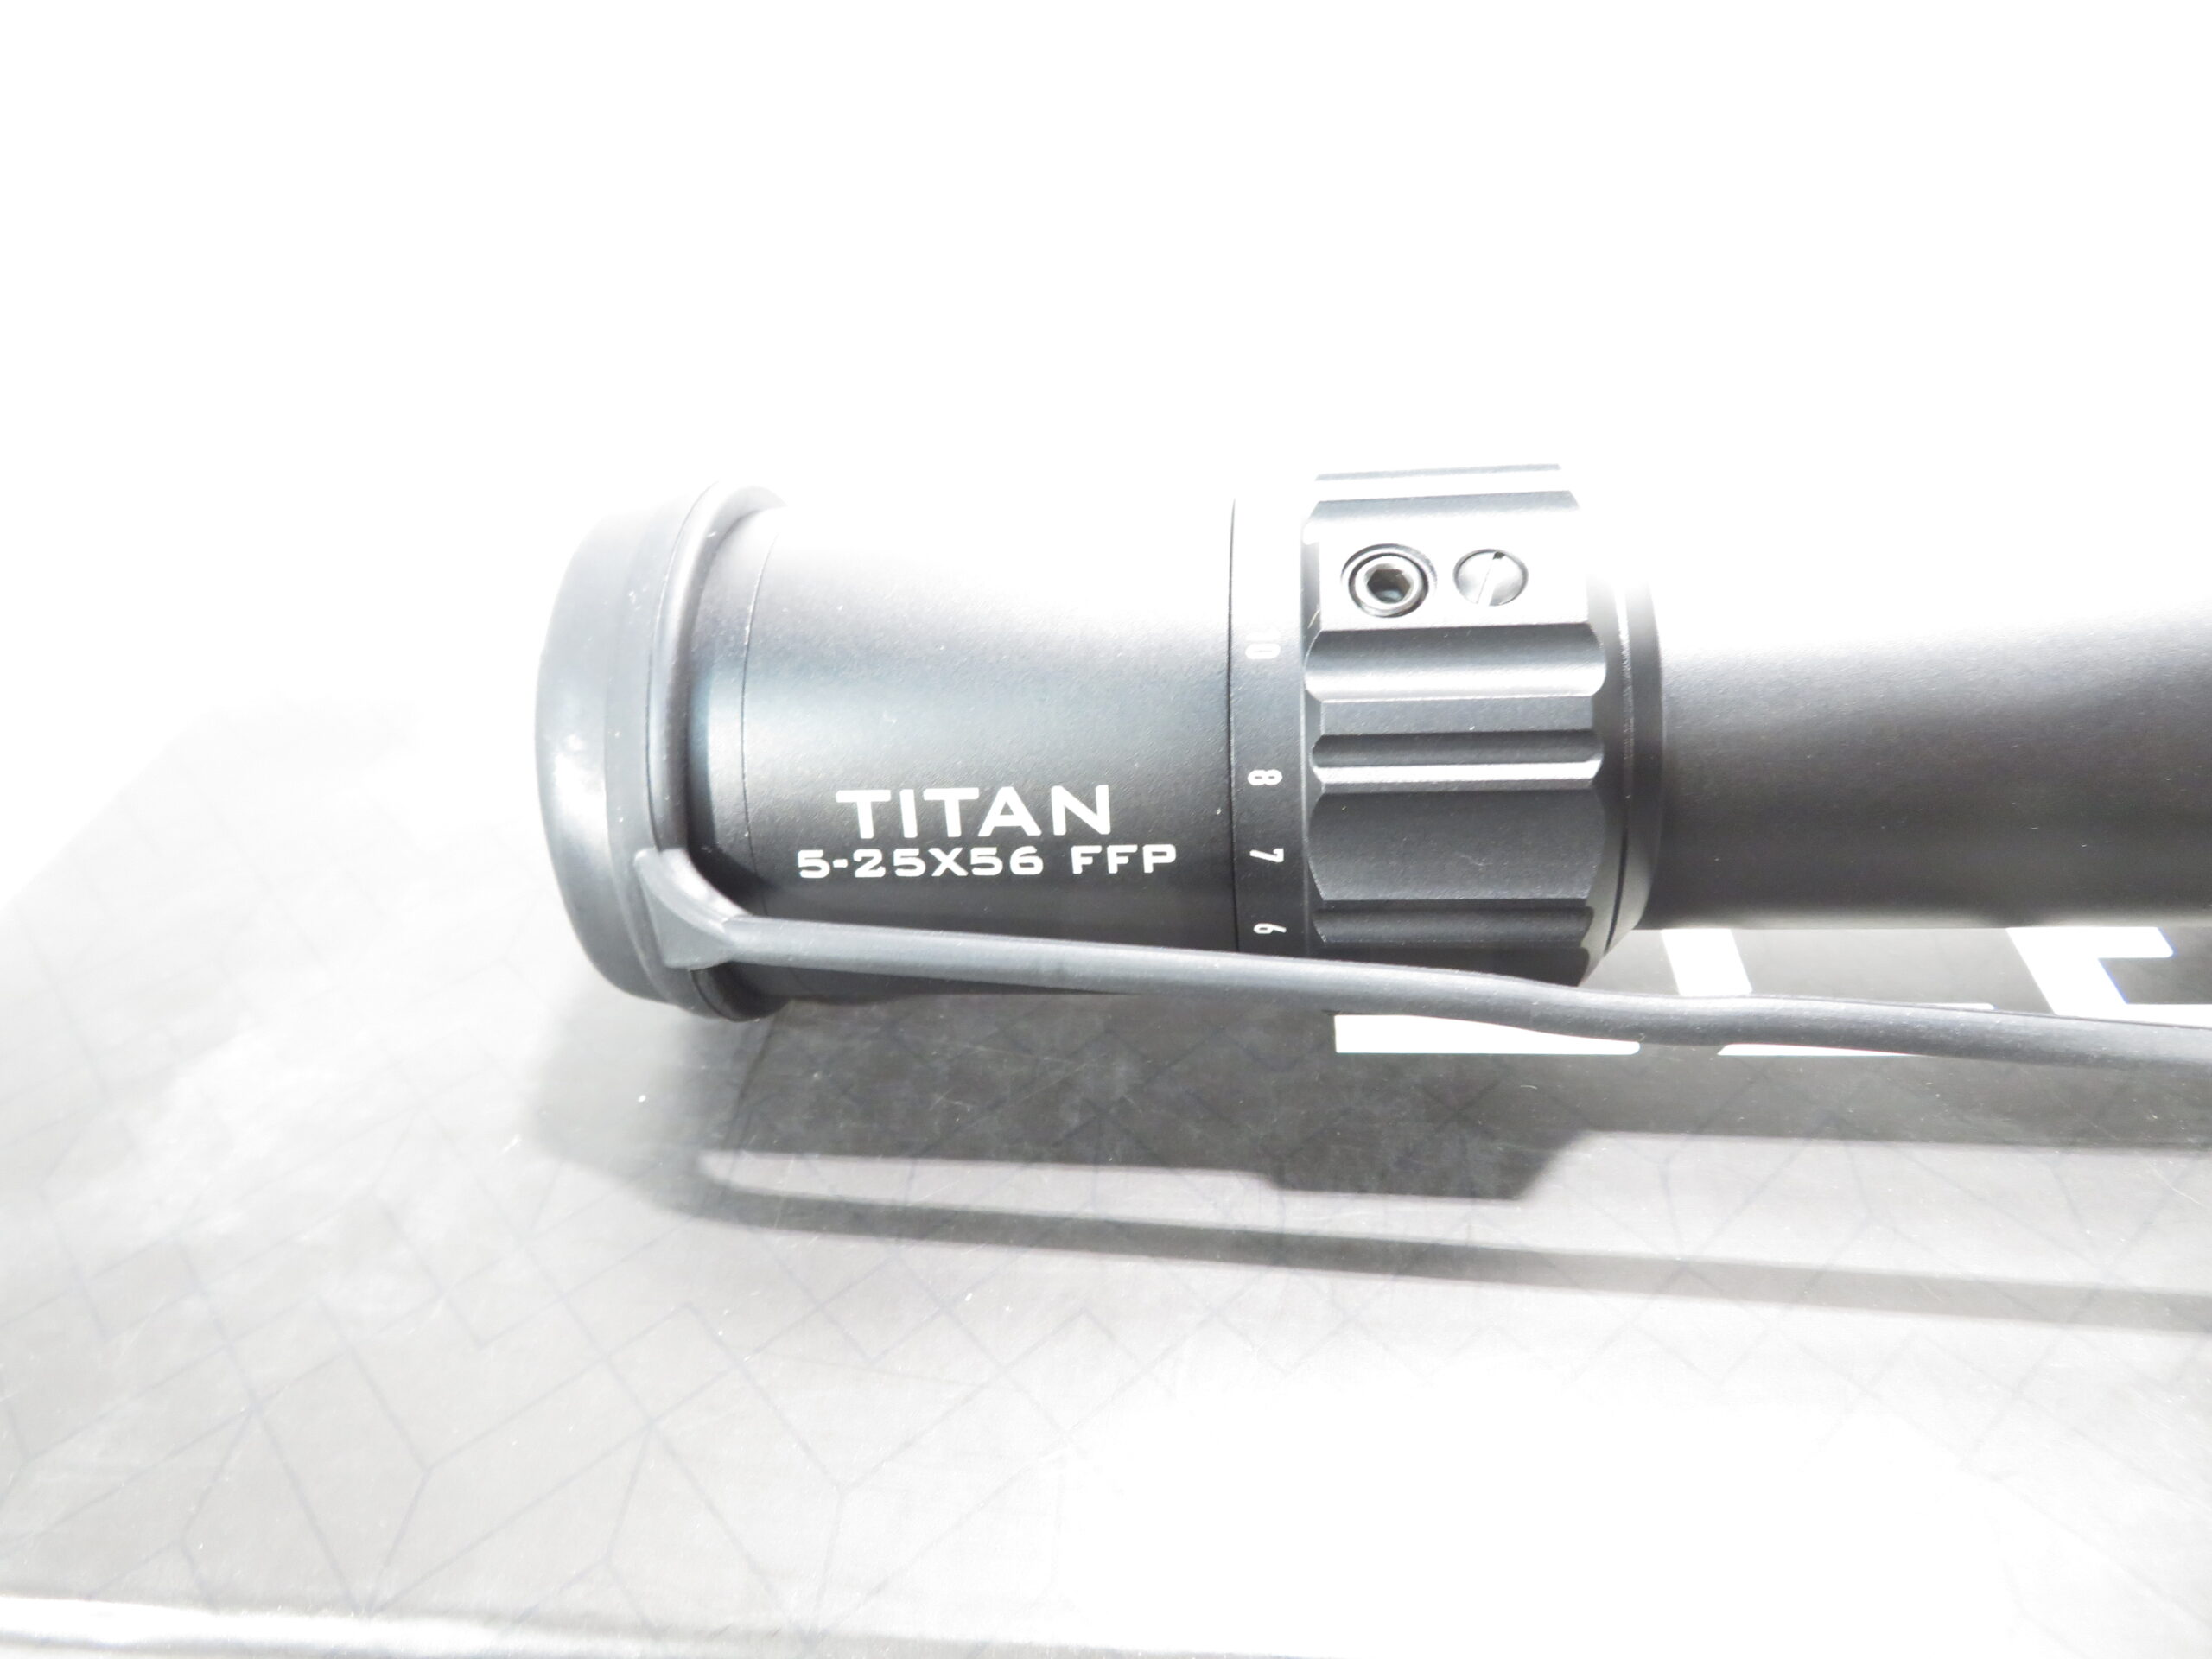 Element Optics Titan 5-25x56 FFP Instruction Manual - Optics Trade